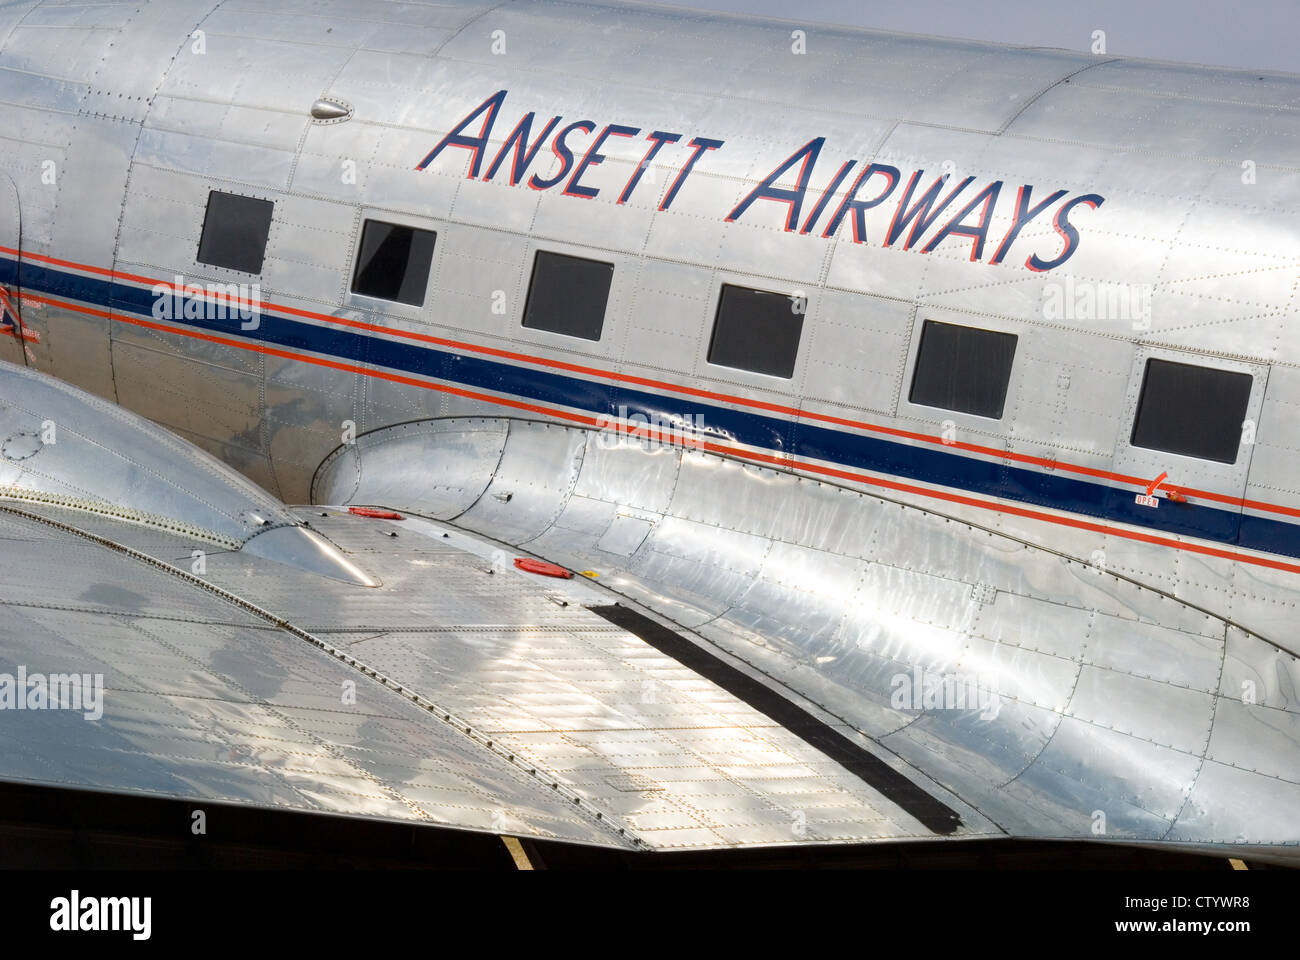 Frühe australische Ansett Airways DC 10 auf dem Display in Adelaide, South Australia Stockfoto